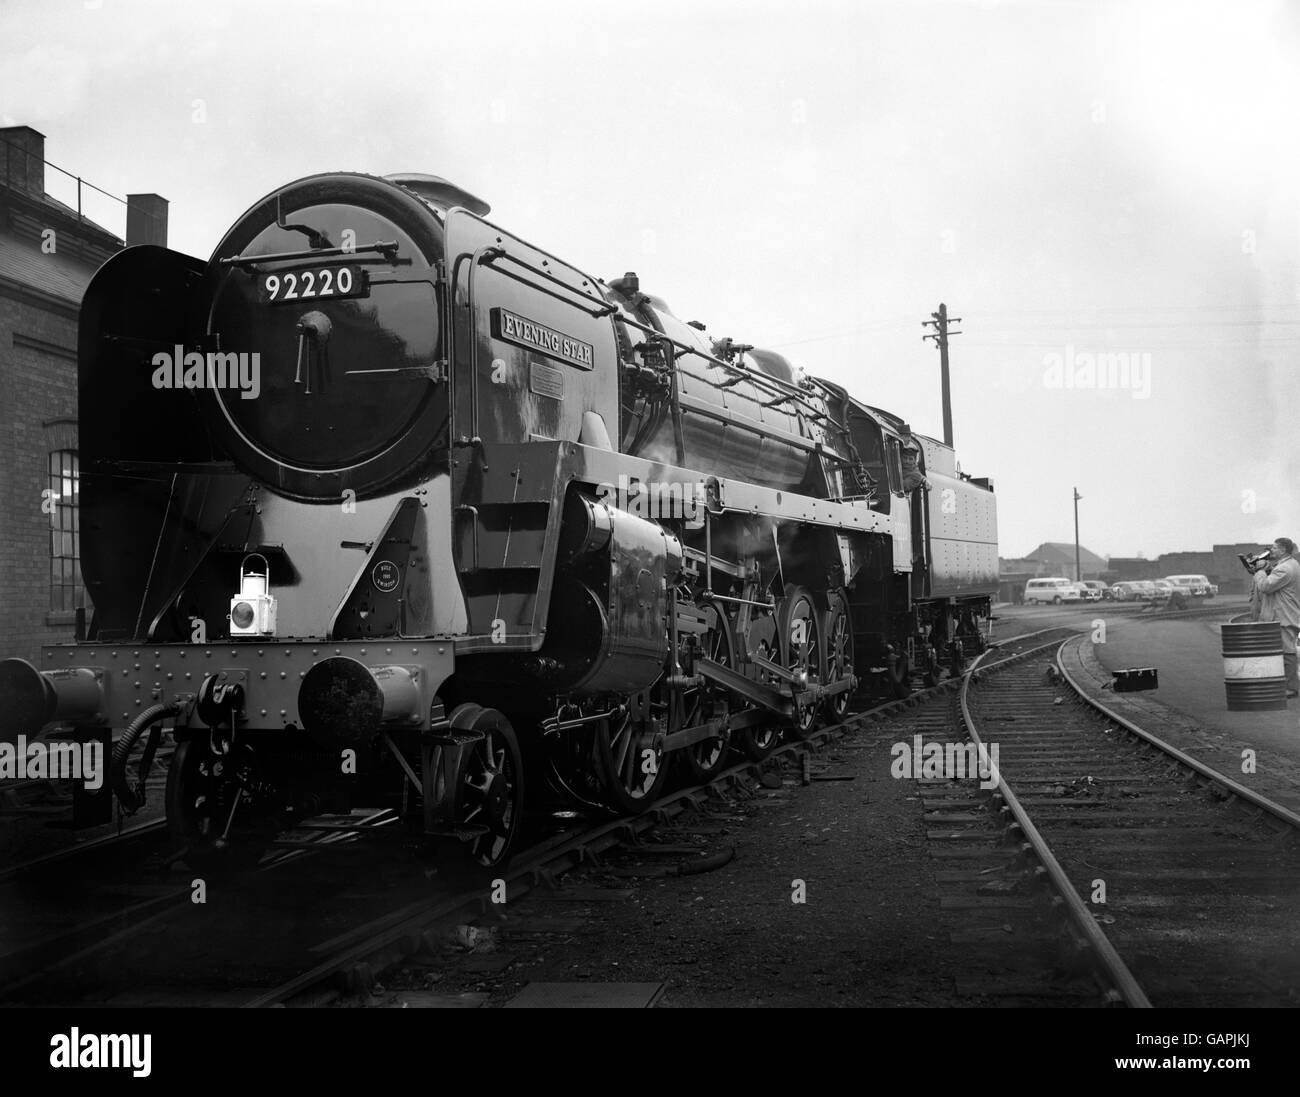 Hier abgebildet ist der 'Evening Star' , eine 2-10-0 Dampflokomotive, als sie heute (Freitag) nach ihrer Namenszeremonie langsam aus Swindon-Werken dampfte. "Evening Star" ist die letzte Dampflokomotive, die von British Railways als Ergebnis der Dieselisierungs- und Elektrifizierungspolitik gebaut wurde, die von den Eisenbahnen in ihrem derzeitigen Modernisierungsplan angenommen wurde. Stockfoto